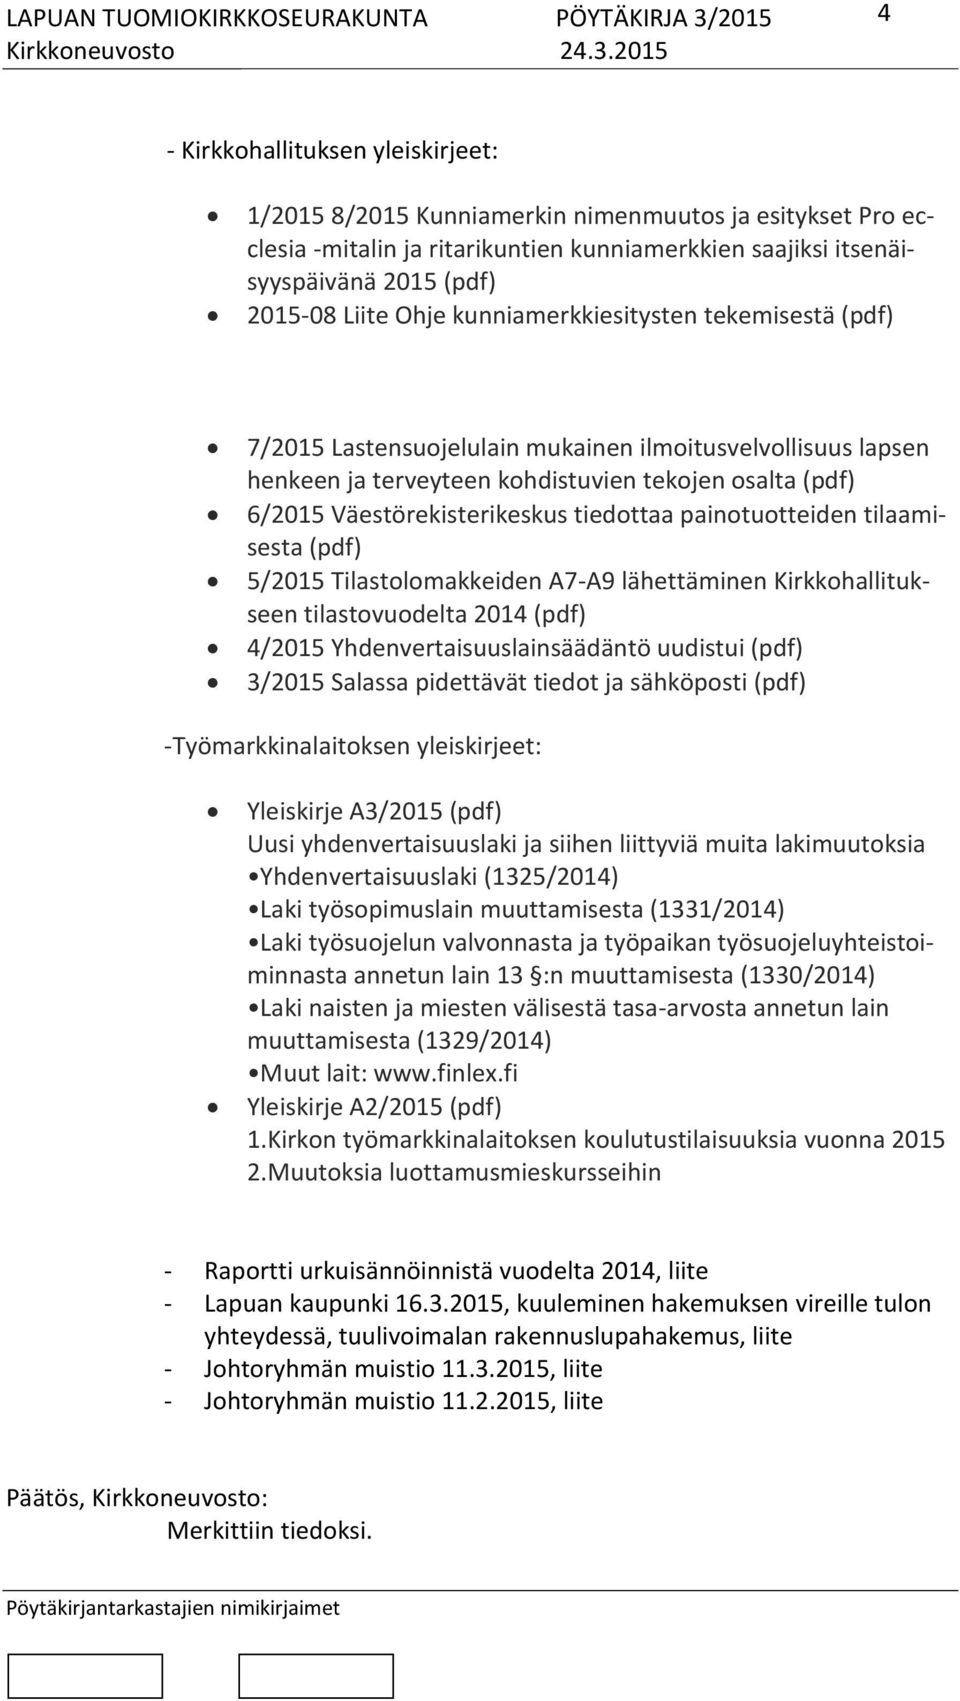 painotuotteiden tilaamisesta (pdf) 5/2015 Tilastolomakkeiden A7-A9 lähettäminen Kirkkohallitukseen tilastovuodelta 2014 (pdf) 4/2015 Yhdenvertaisuuslainsäädäntö uudistui (pdf) 3/2015 Salassa